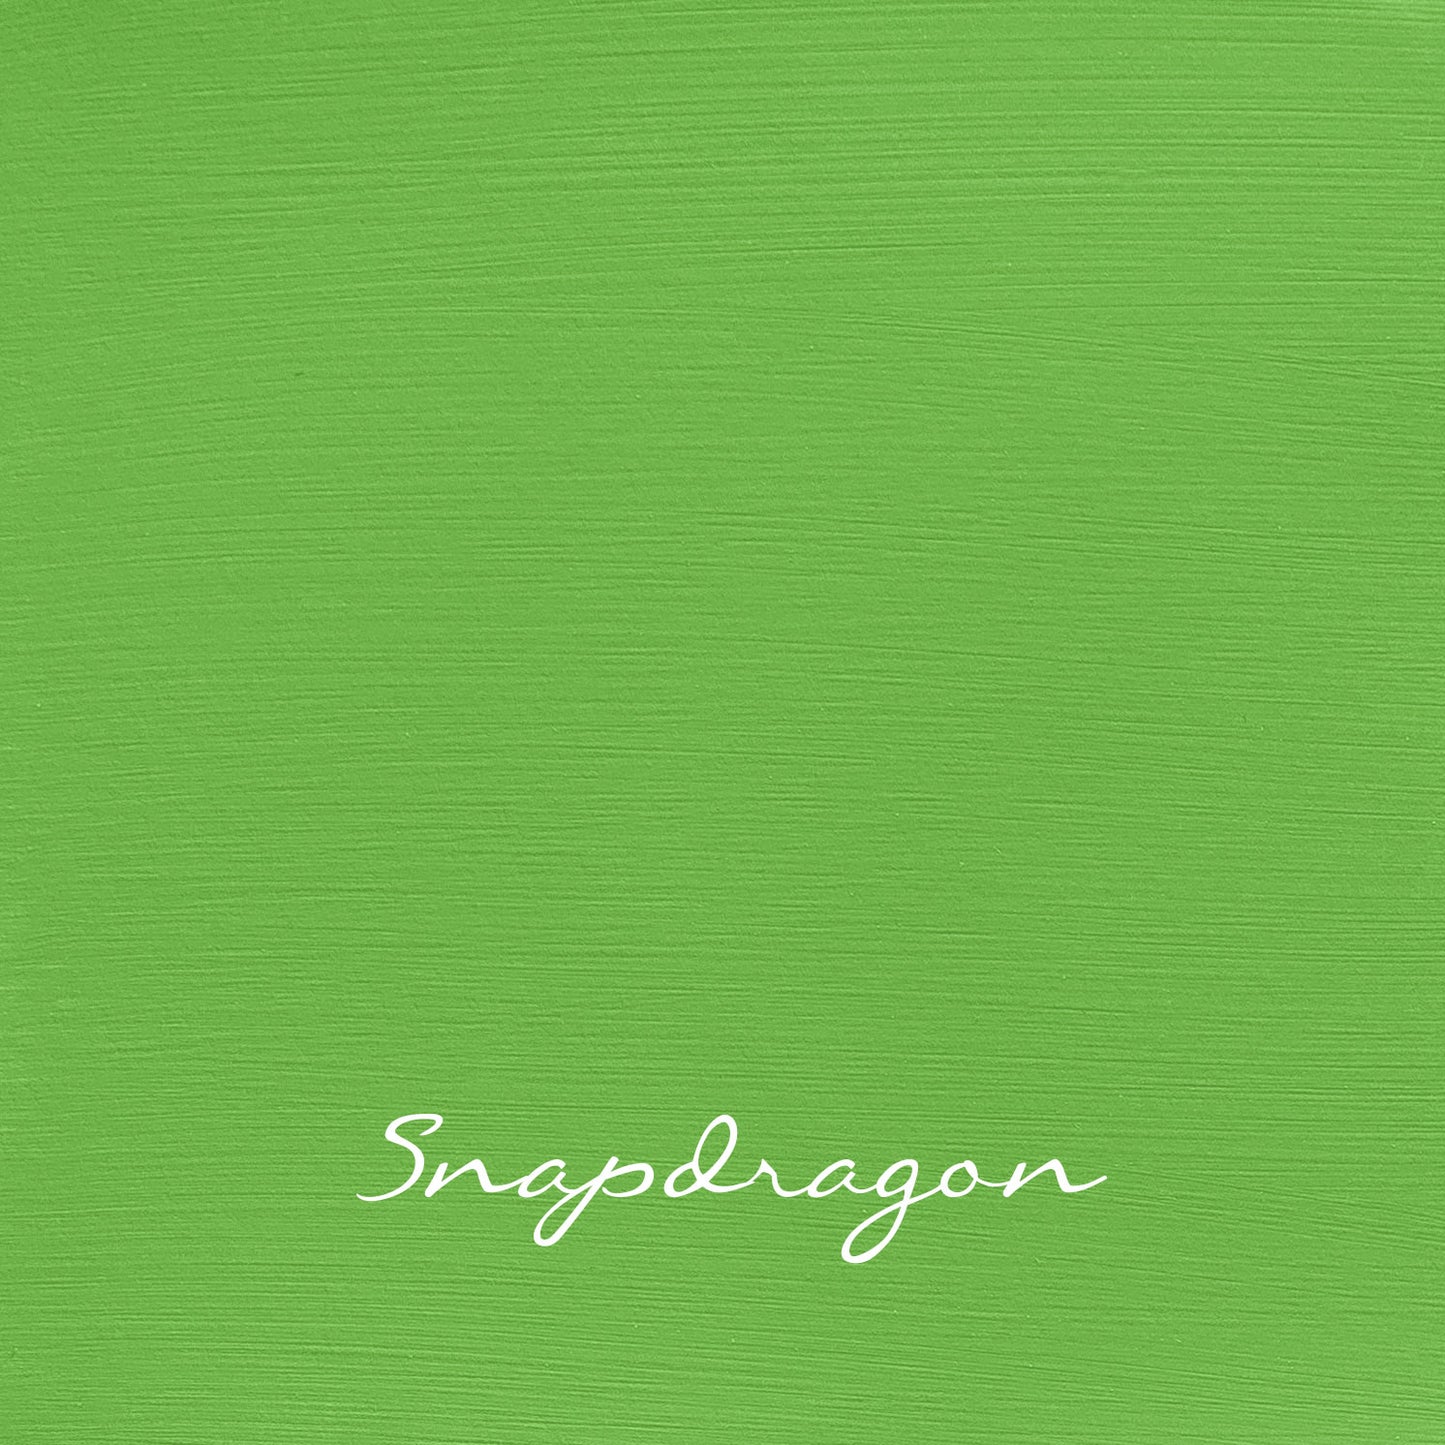 Snapdragon - Vintage